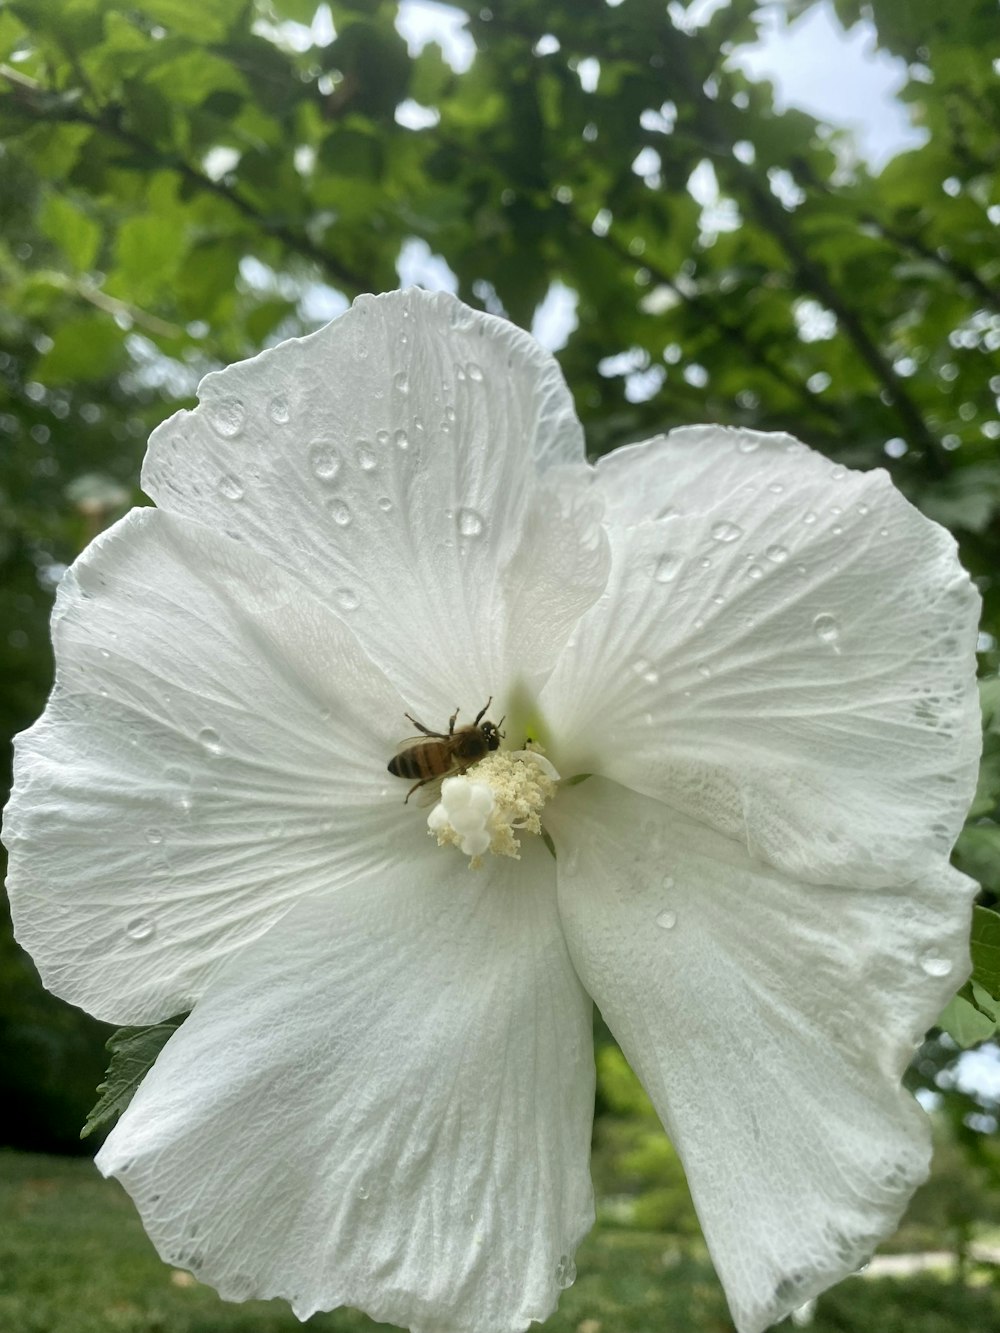 Eine Biene auf einer weißen Blume